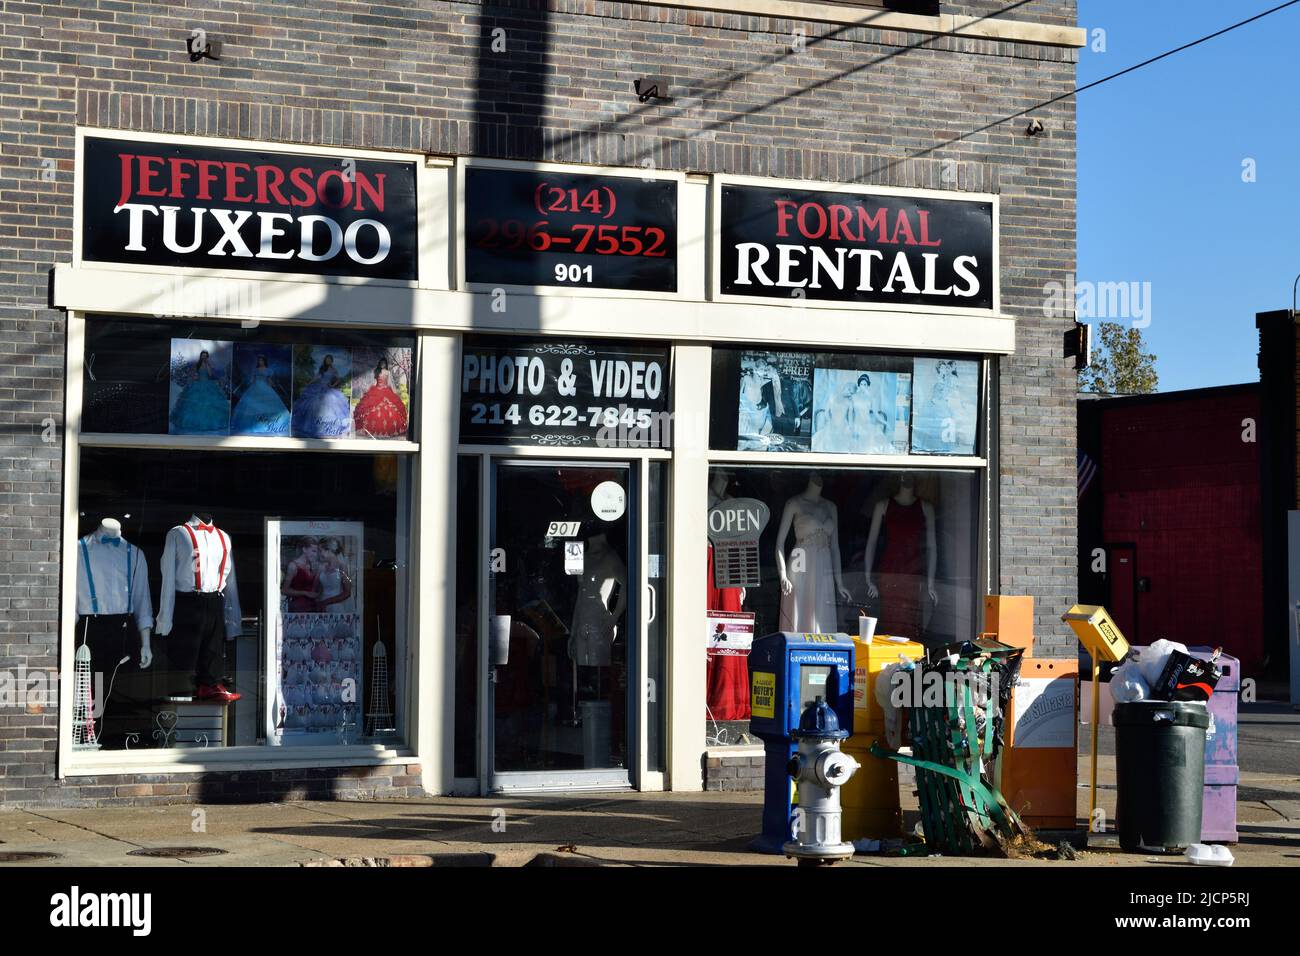 Tuxedo y tienda formal de alquiler de ropa en el área de Oak Cliff en Dallas, Texas Foto de stock